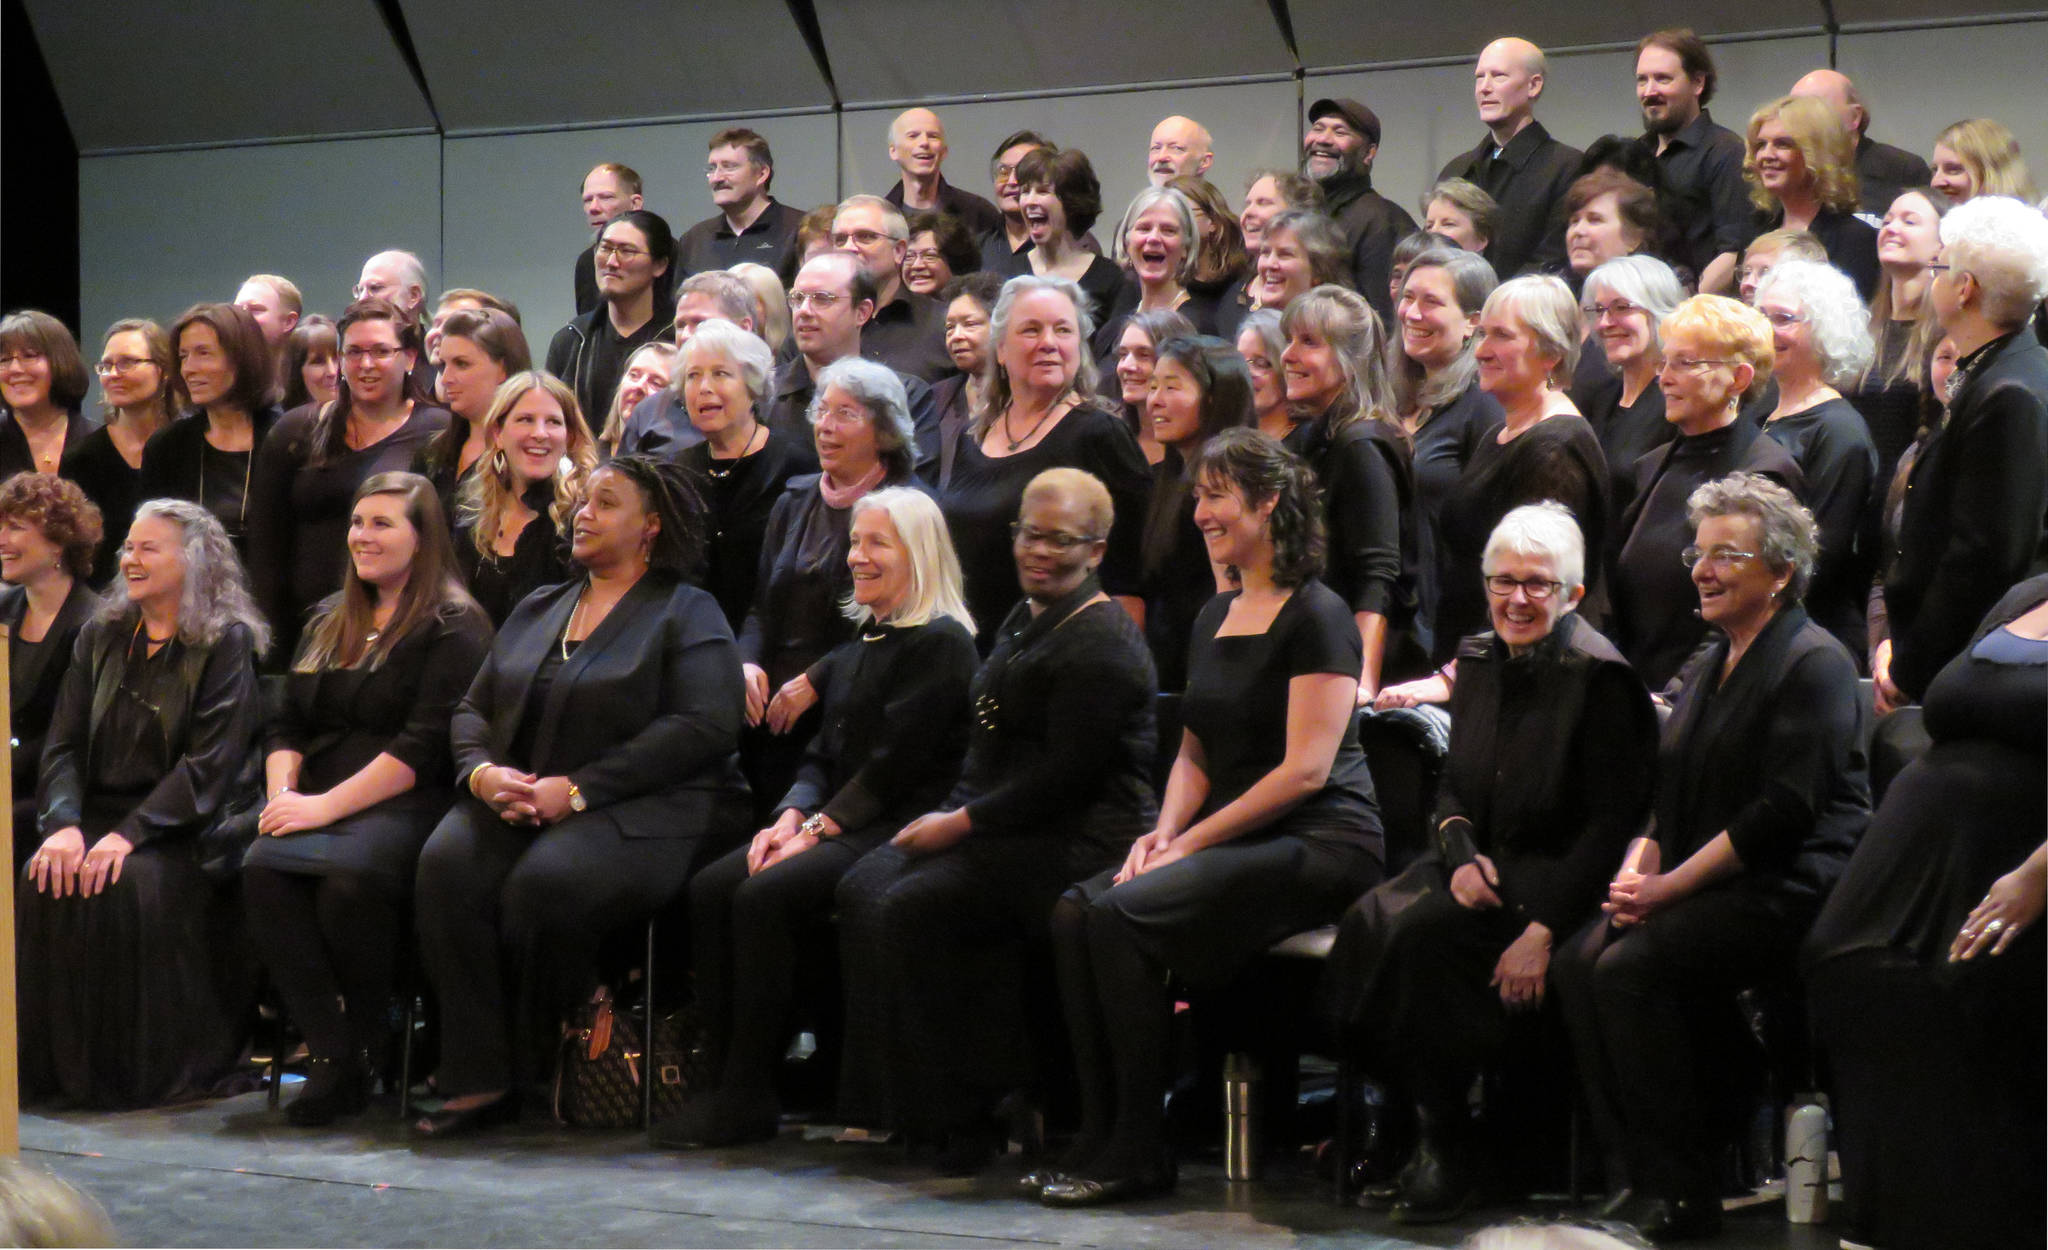 Members of the Juneau Gospel Workshop Choir laugh between songs. Mary Catharine Martin | Capital City Weekly